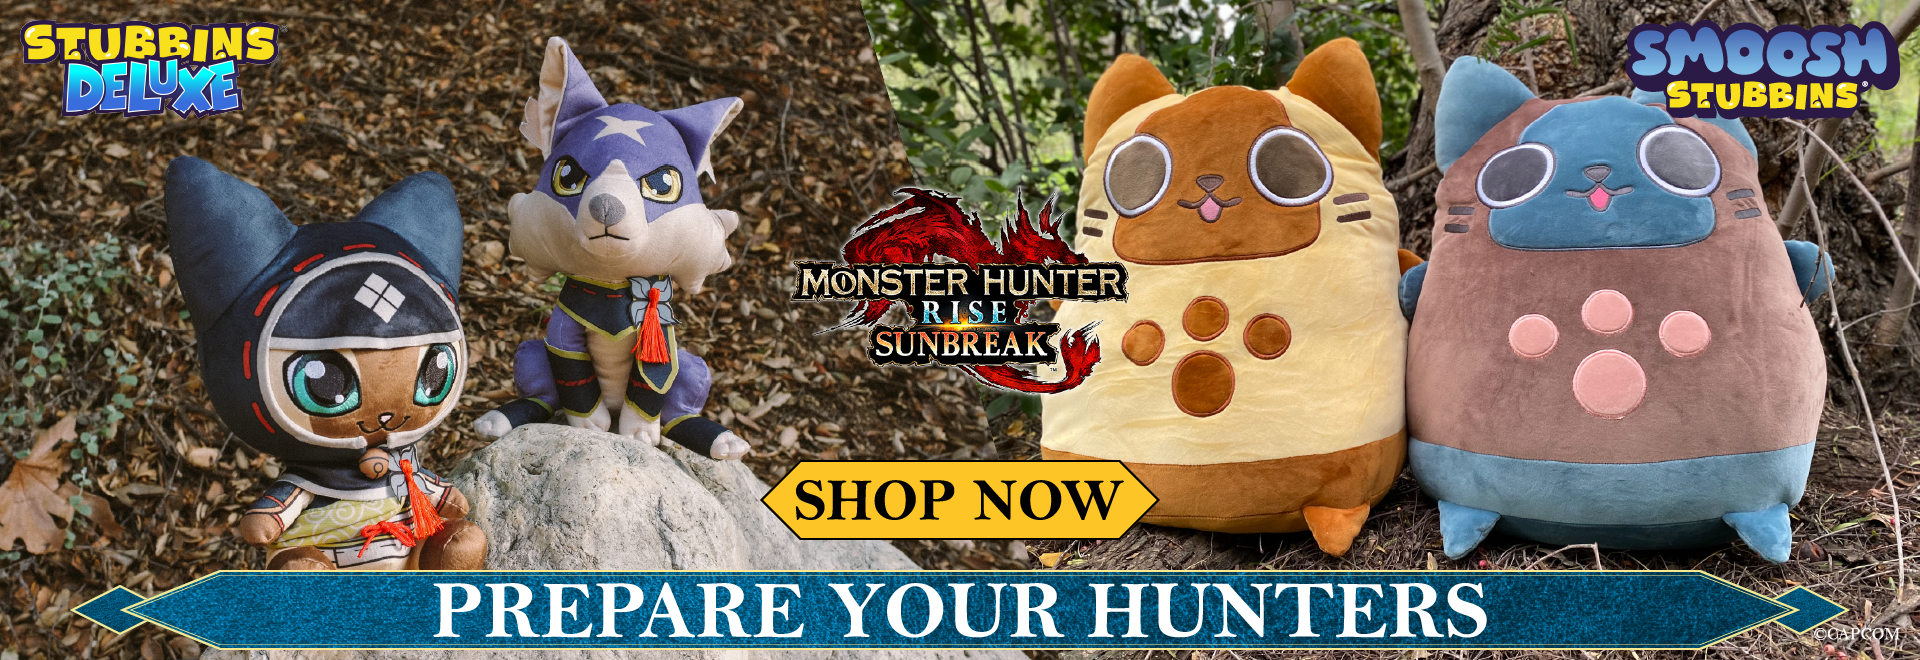 Monster Hunter Rise: Sunbreak - Prepare your hunters!